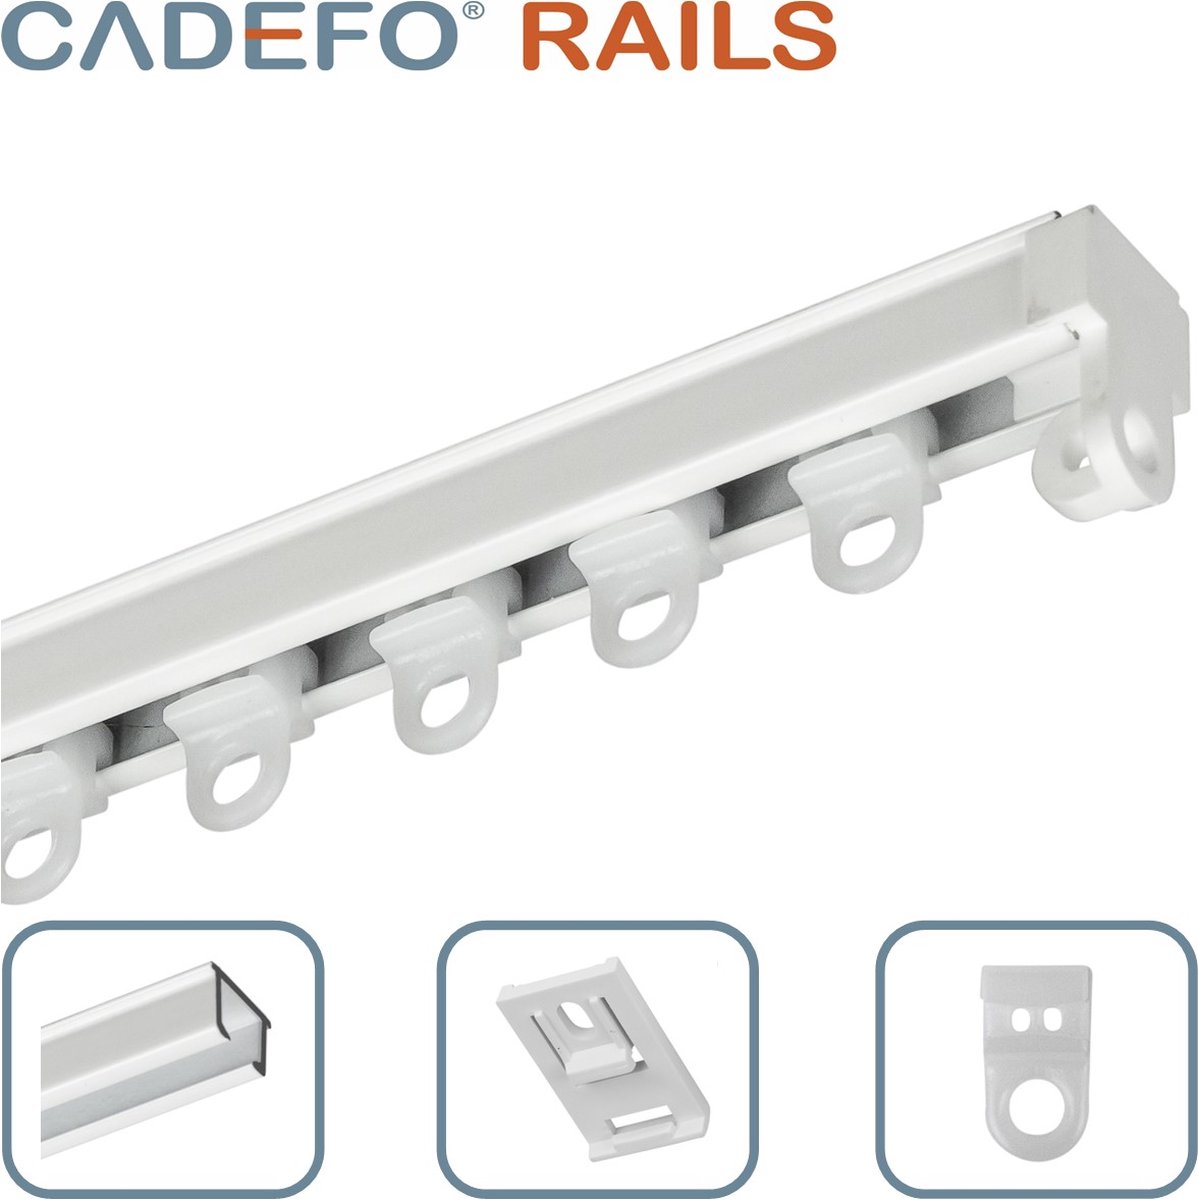 CADEFO RAILS (301 - 350 cm) Gordijnrails - Compleet op maat! - UIT 1 STUK - Leverbaar tot 6 meter - Plafondbevestiging - Lengte 307 cm